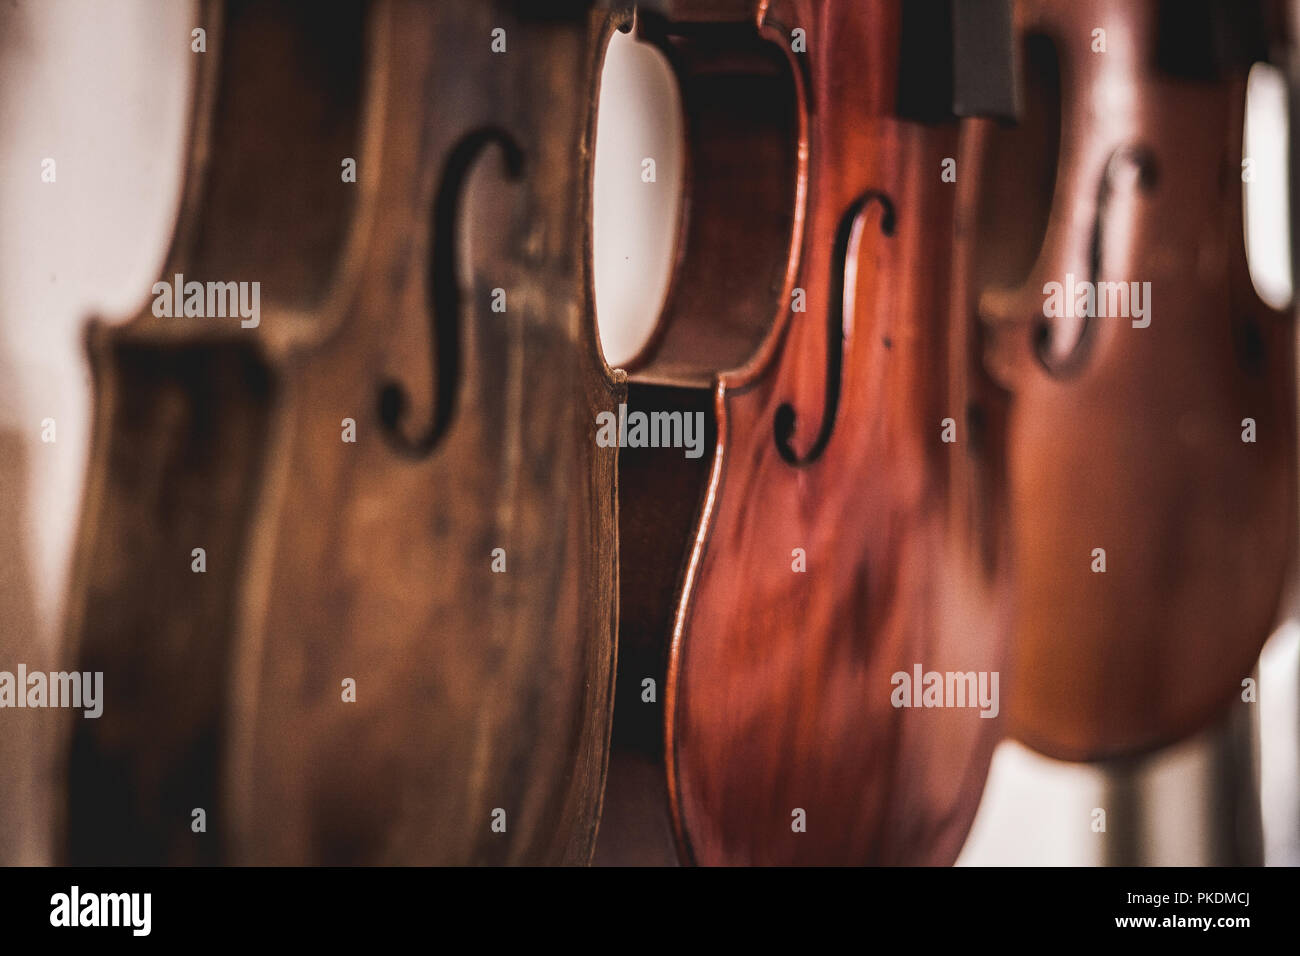 Makroaufnahme eines schönen, handgefertigten Holzmöbeln Geigen, hängend auf weißem Hintergrund mit geringer Tiefenschärfe. Ein Ergebnis der Expert Tischler und Gitarrenbauer. Stockfoto